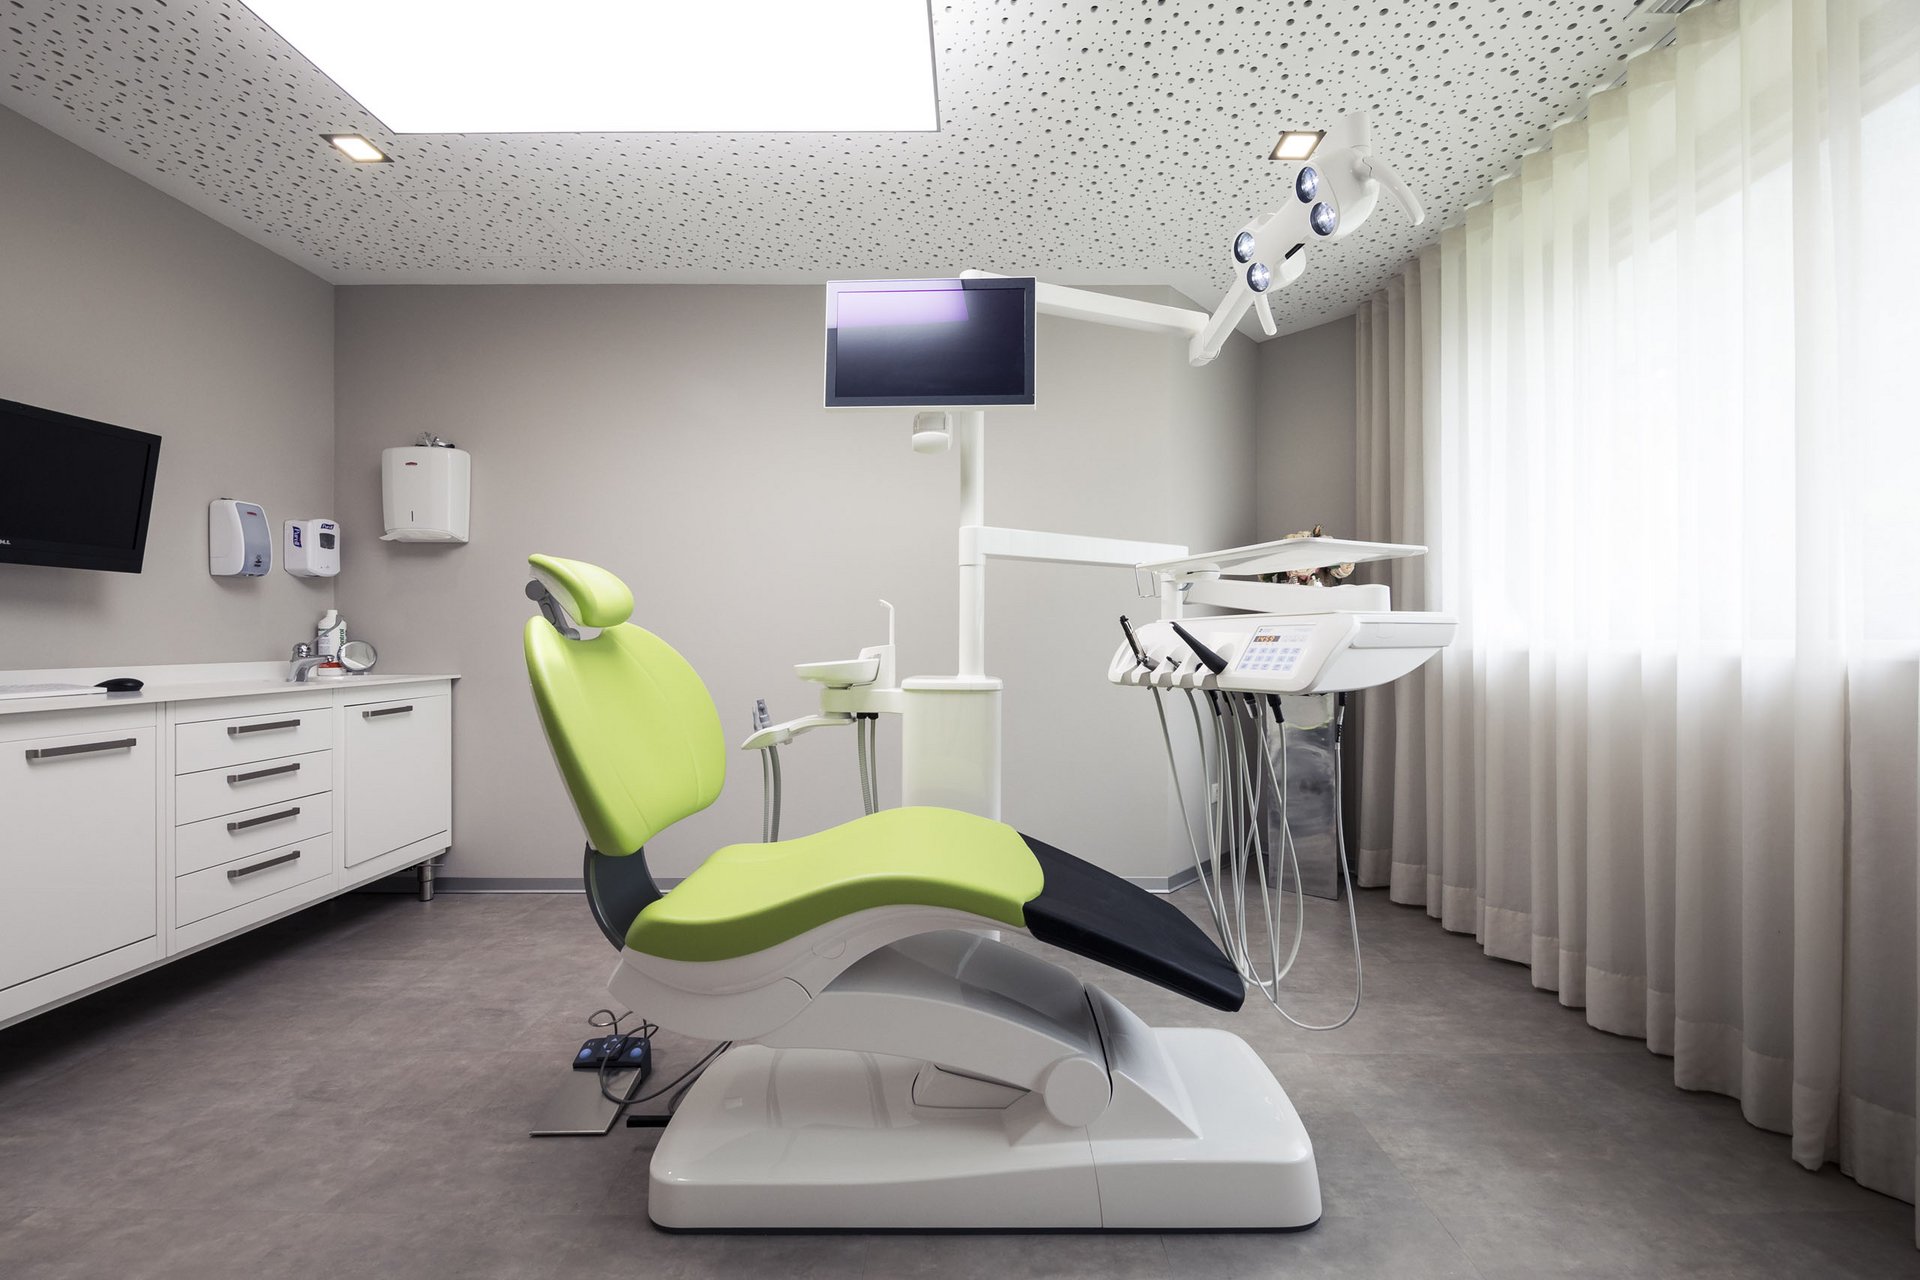 Professional dental treatments at the Quellenhof